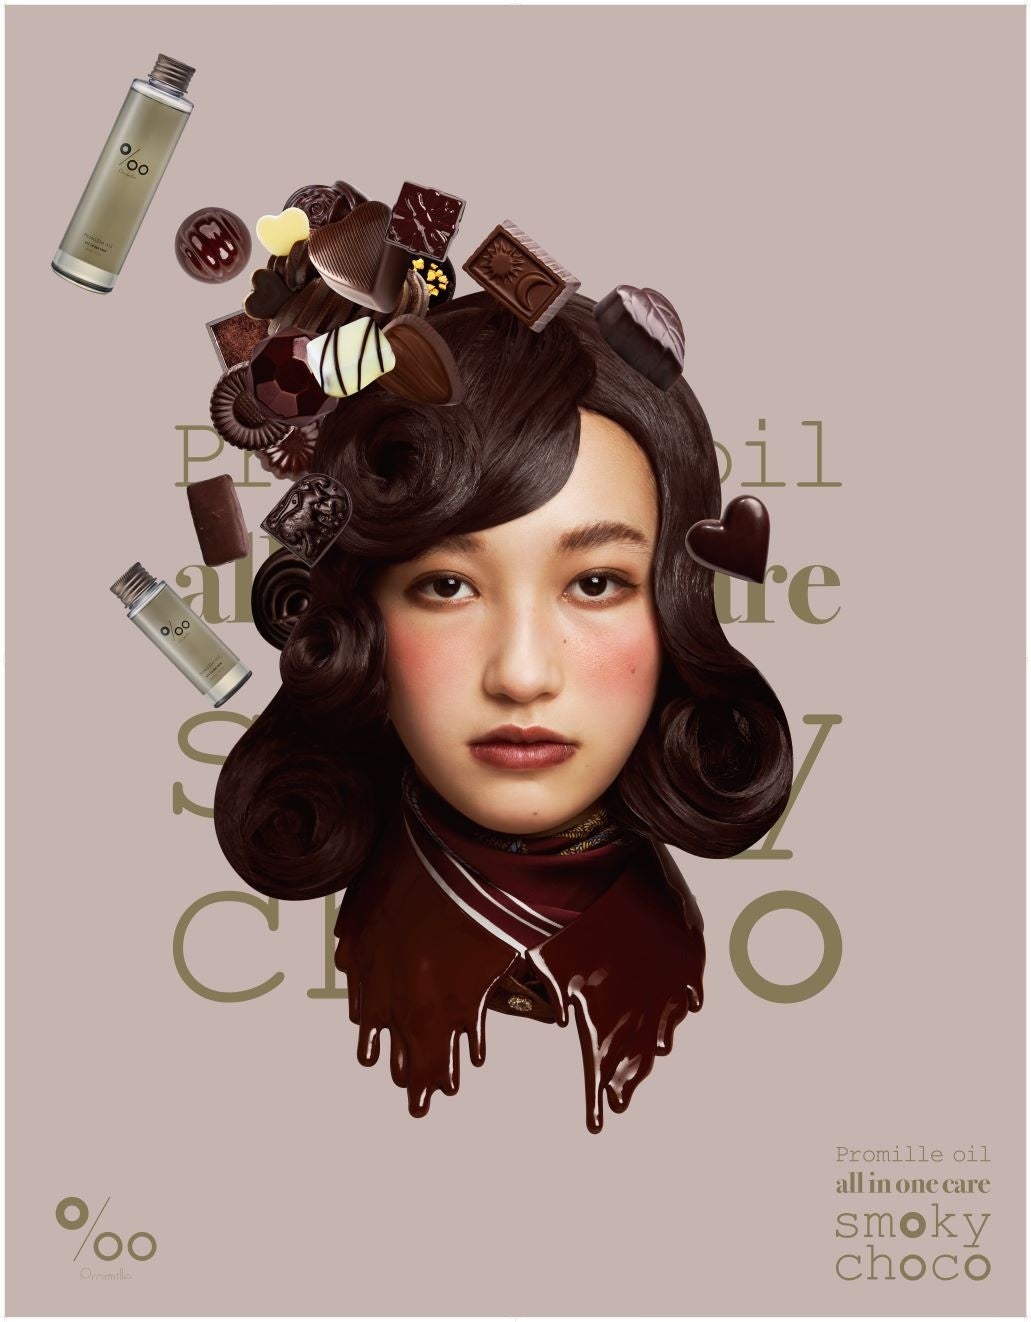 【Promille】より初のバレンタインシーズン商品登場本物のチョコレートのような、ほろ苦く甘い香りのヘア&ボディオイル『Promille oil smoky choco』1月25日(水)限定発売